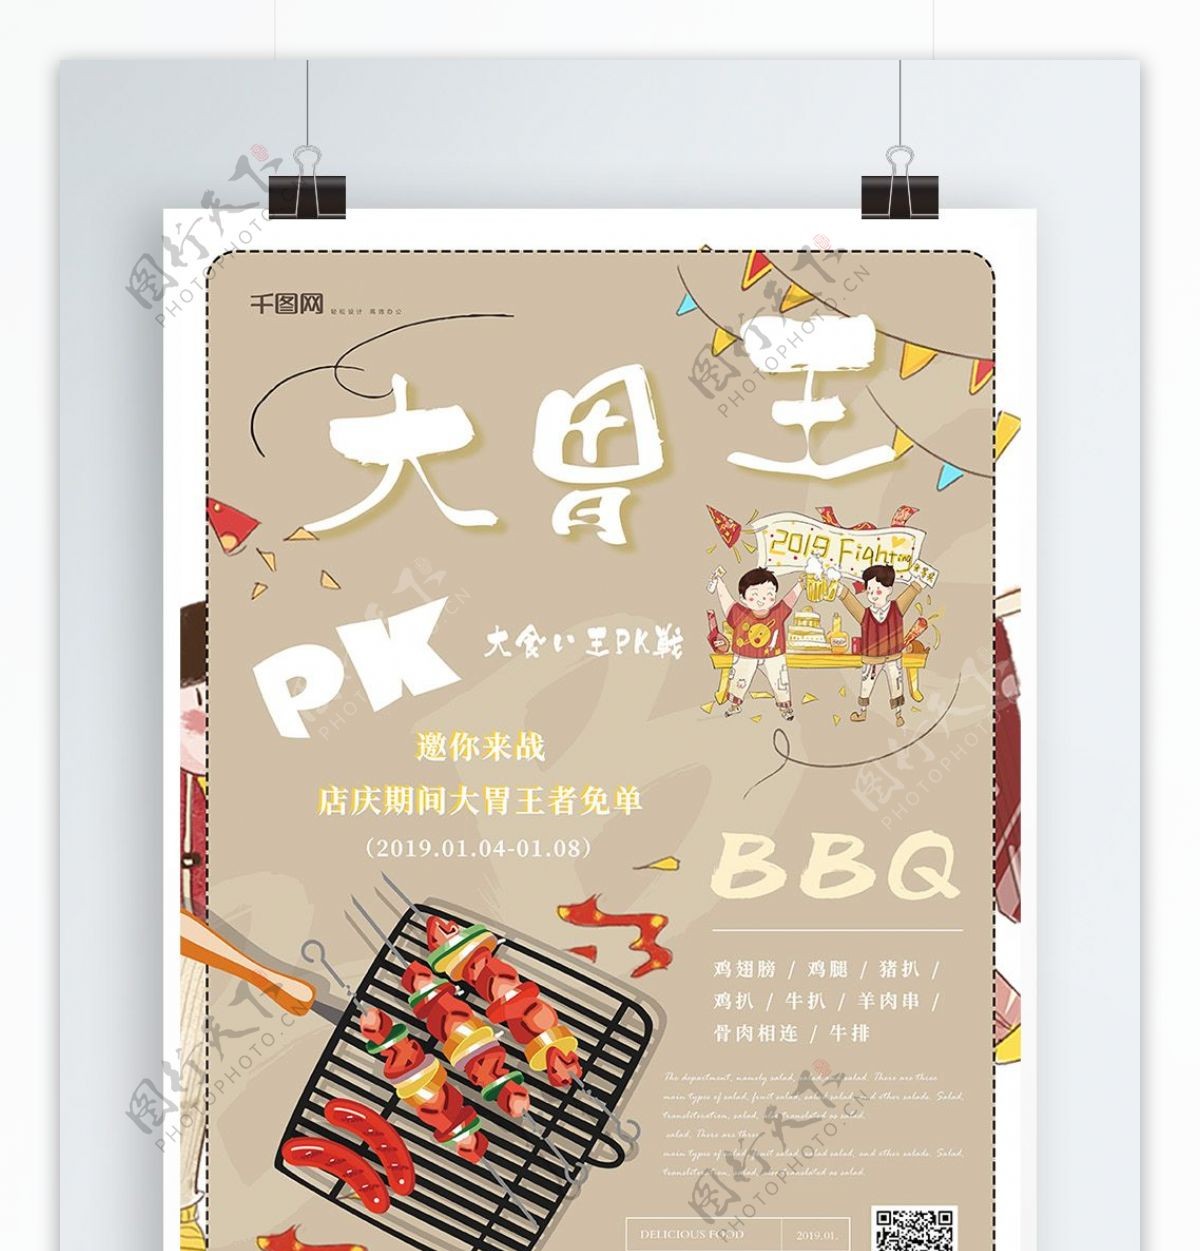 简约创意大胃王PK烤肉美食海报